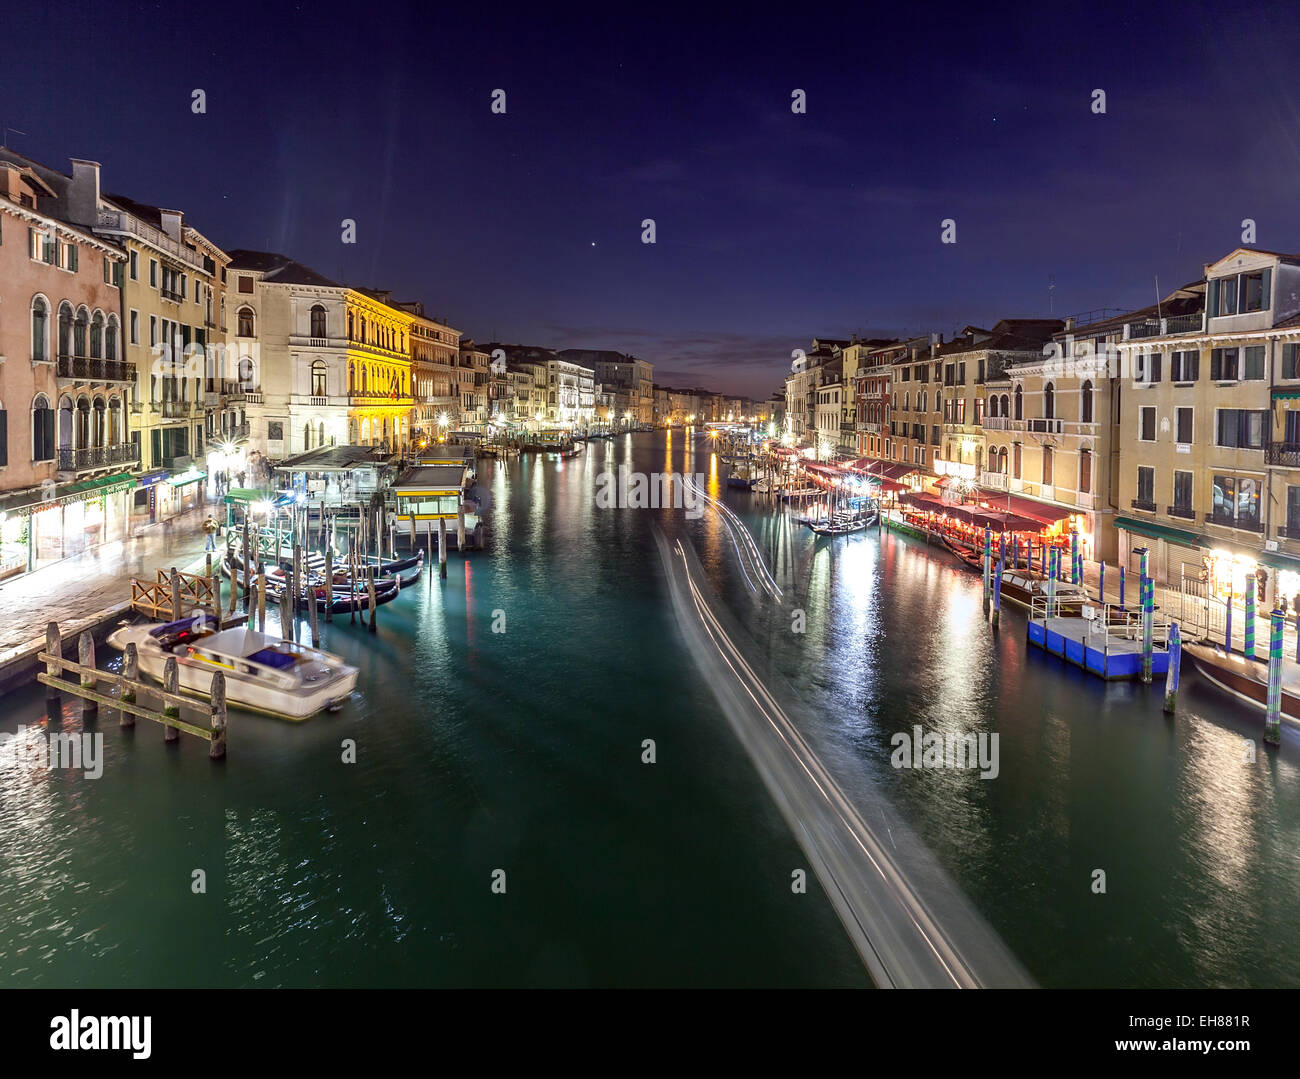 Le Grand Canal éclairé la nuit, Venise, UNESCO World Heritage Site, Vénétie, Italie, Europe Banque D'Images